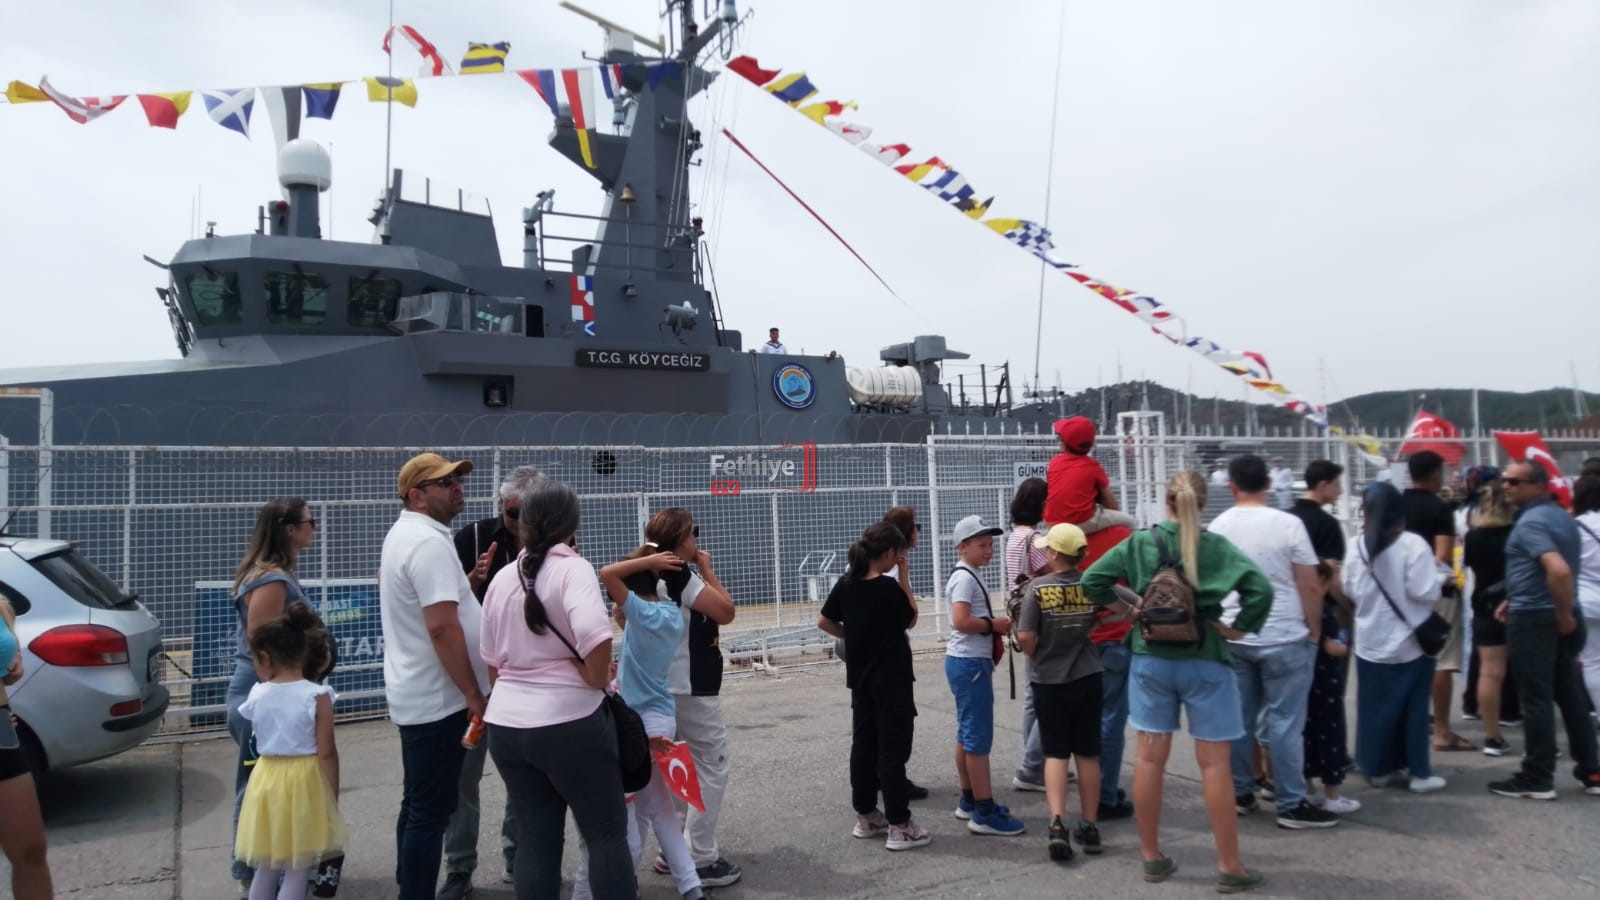 Halkın Ziyaretine Açılan, Askeri Gemiye Büyük İlgi Oldu (1)